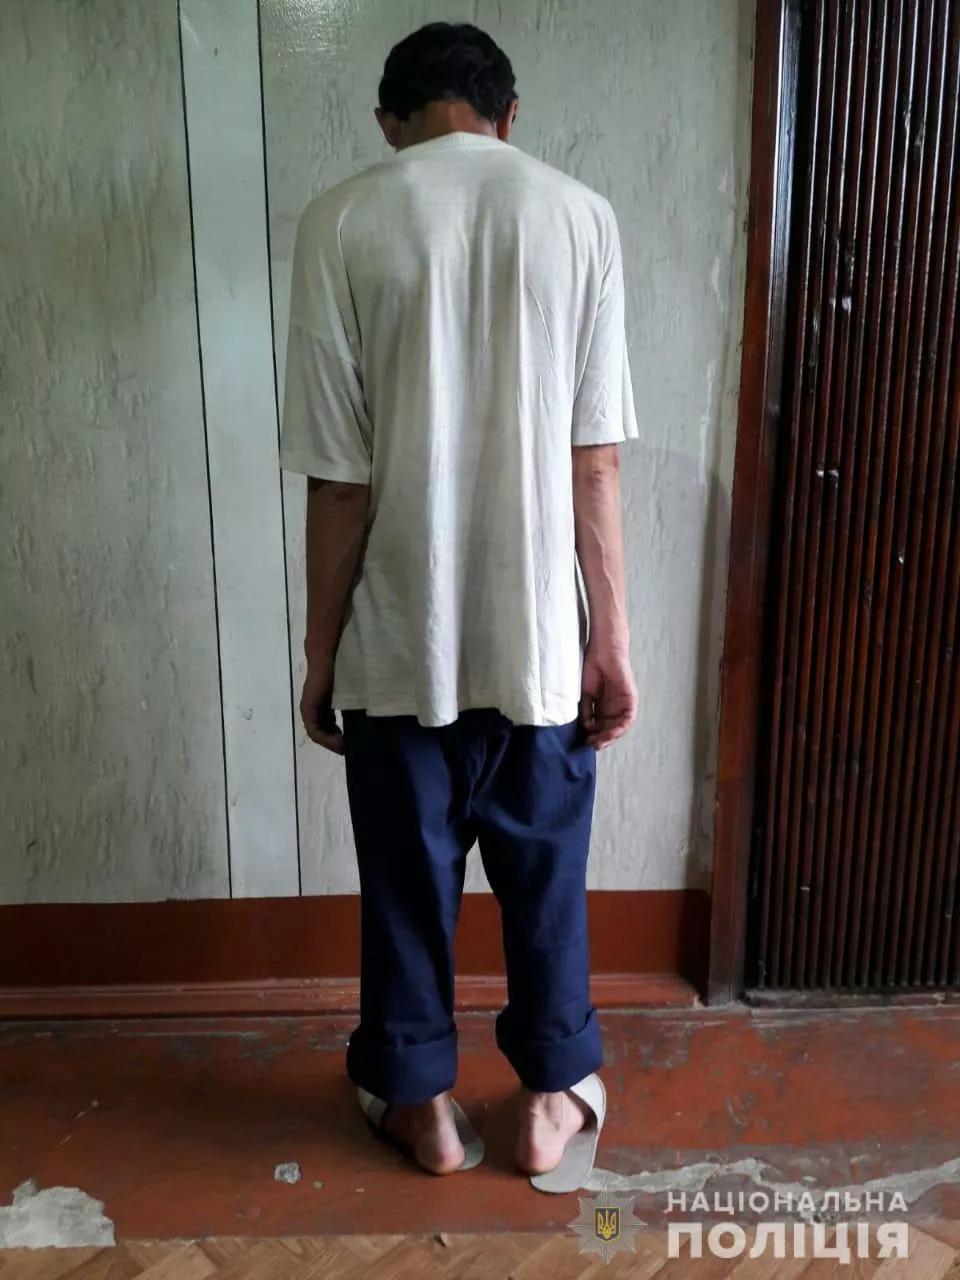 Затриманому загрожує довічне ув'язнення. Фото: ГУНП